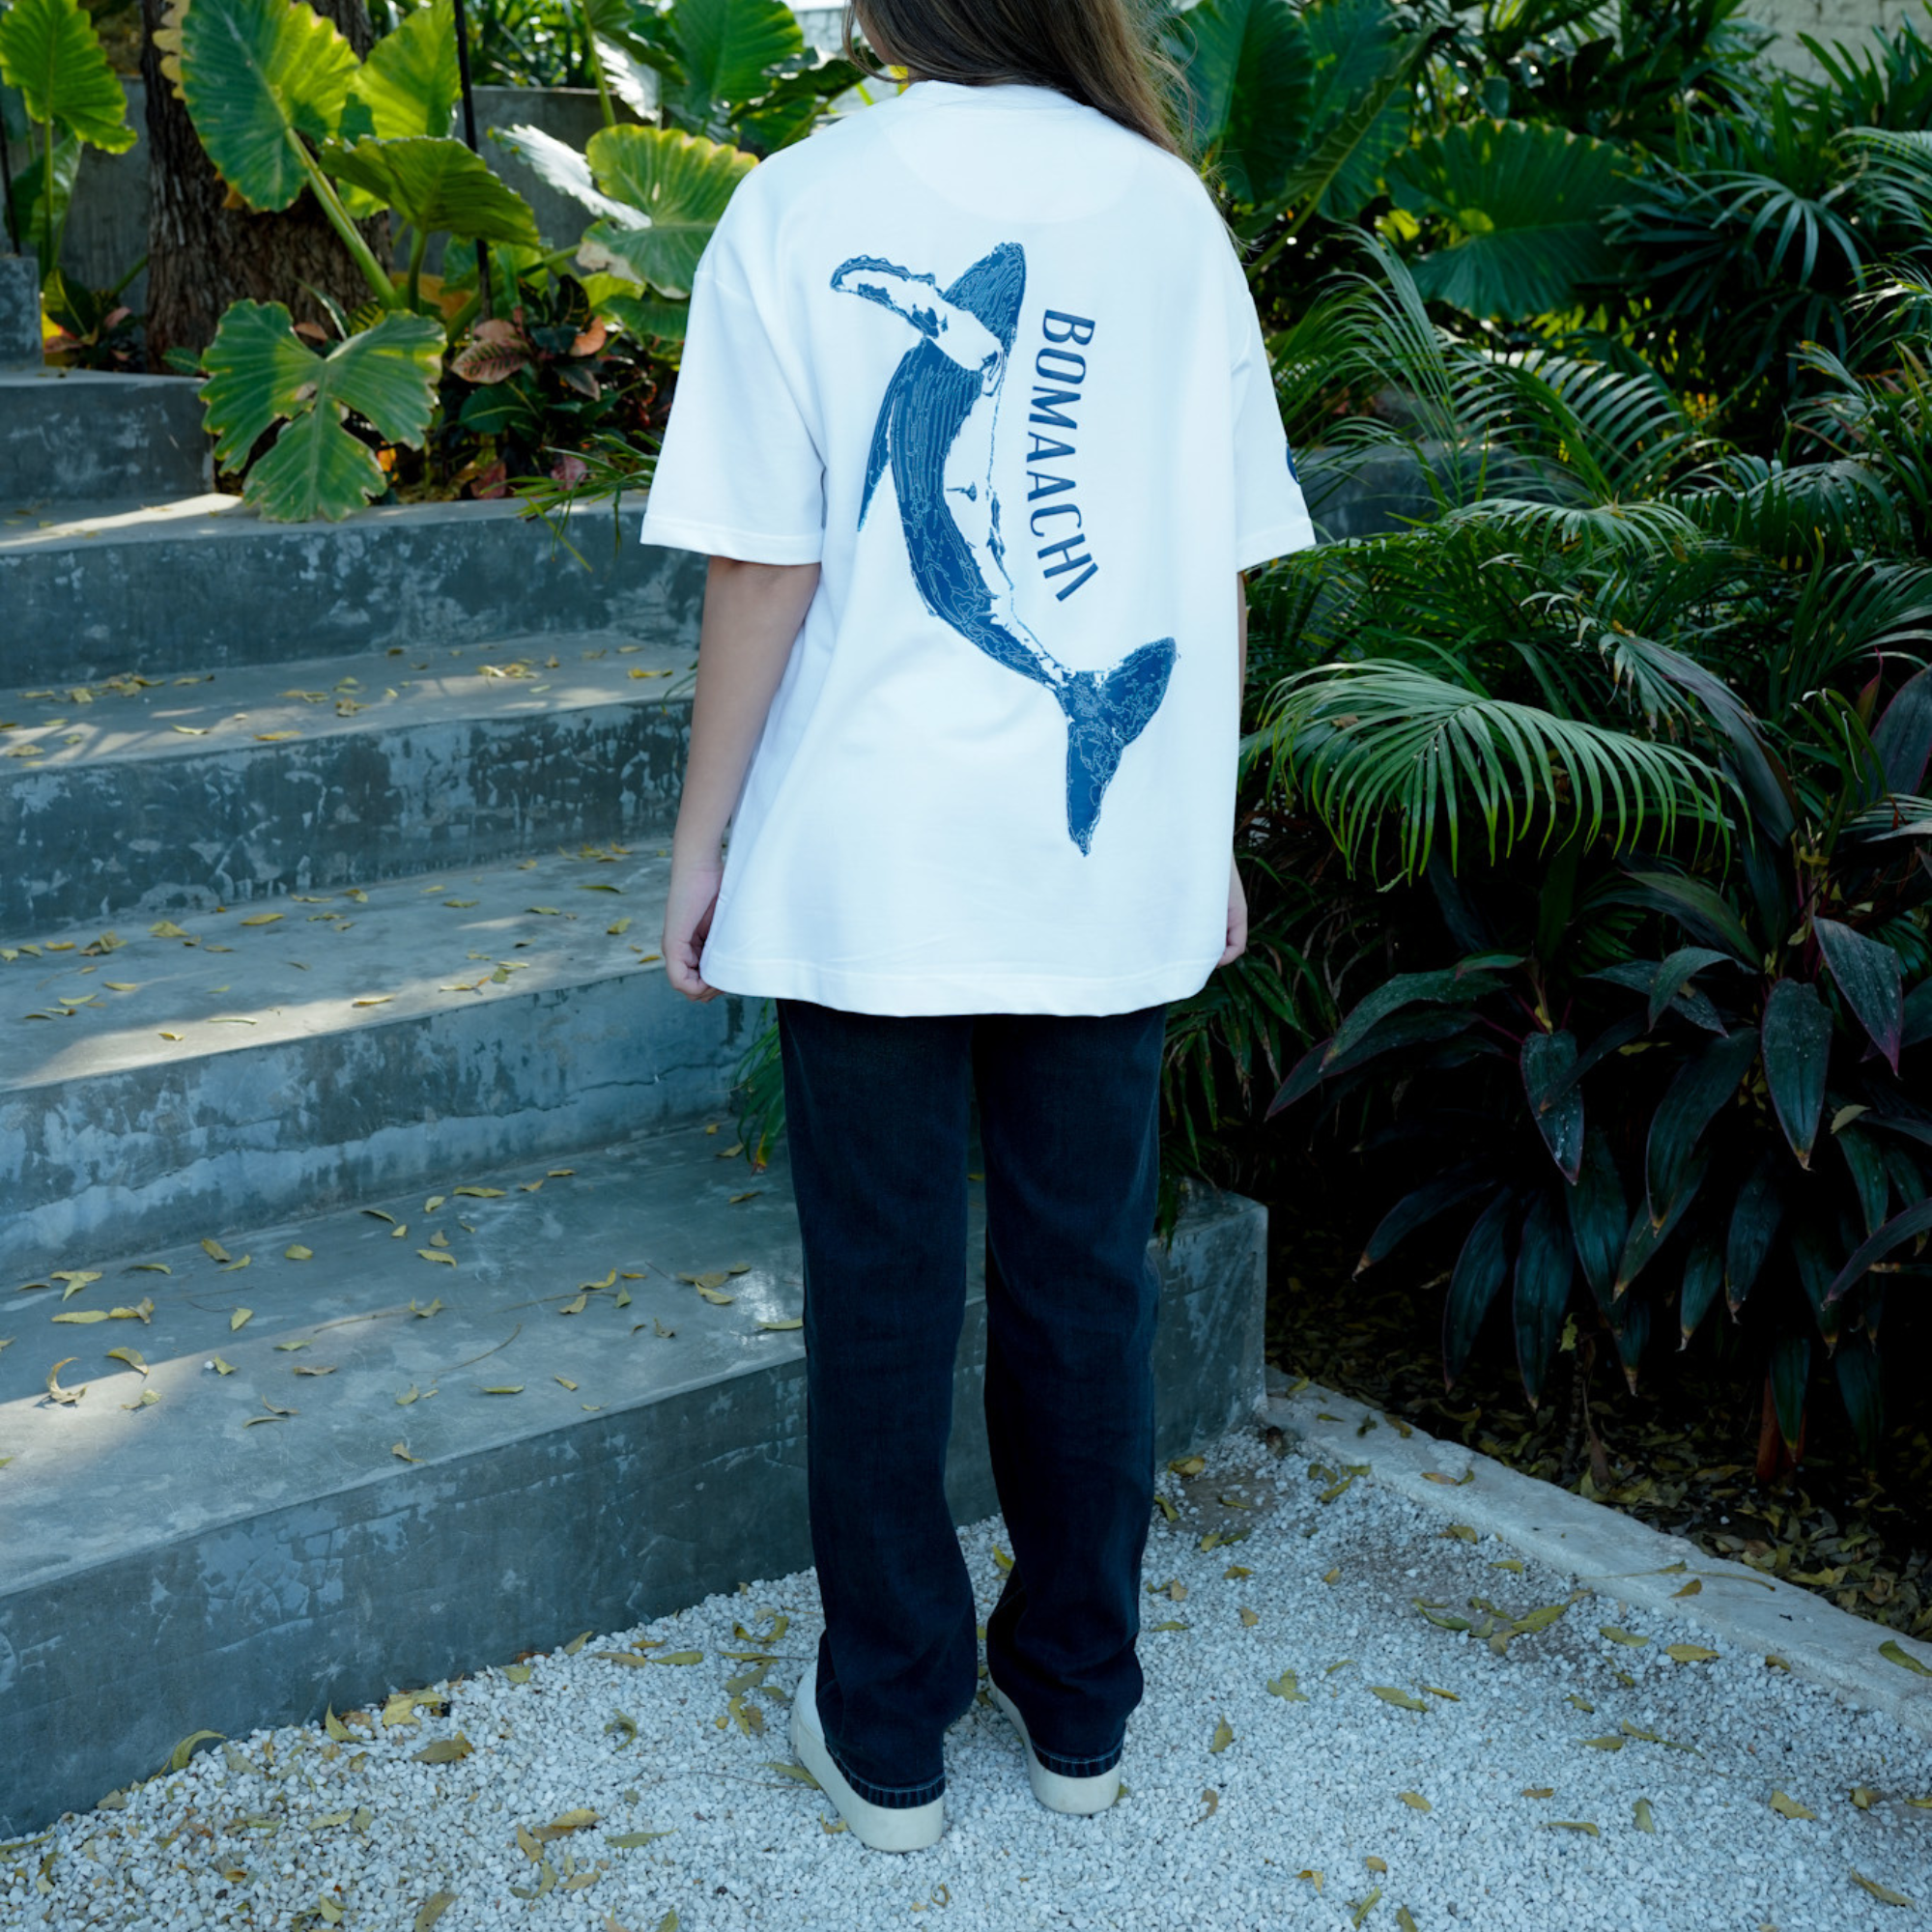 Blue Whale T-shirt